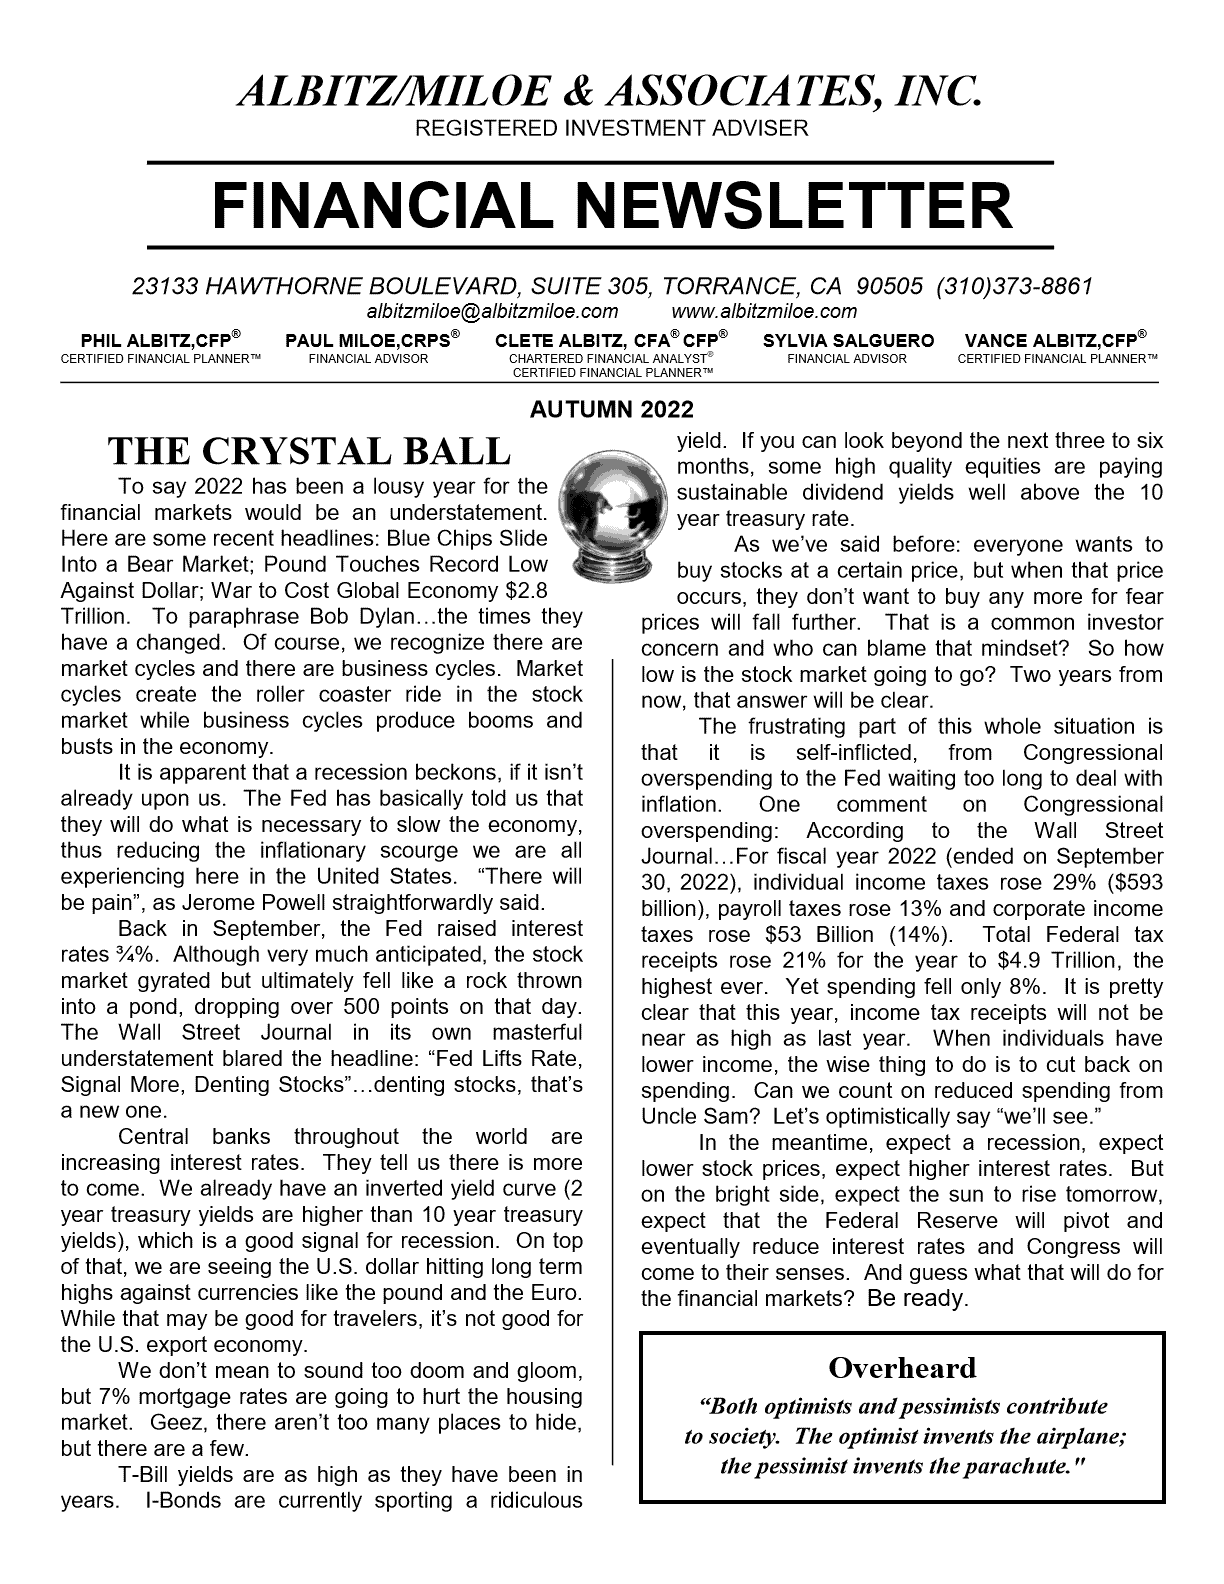 Am Autumn 2022 Financial Newsletter 1